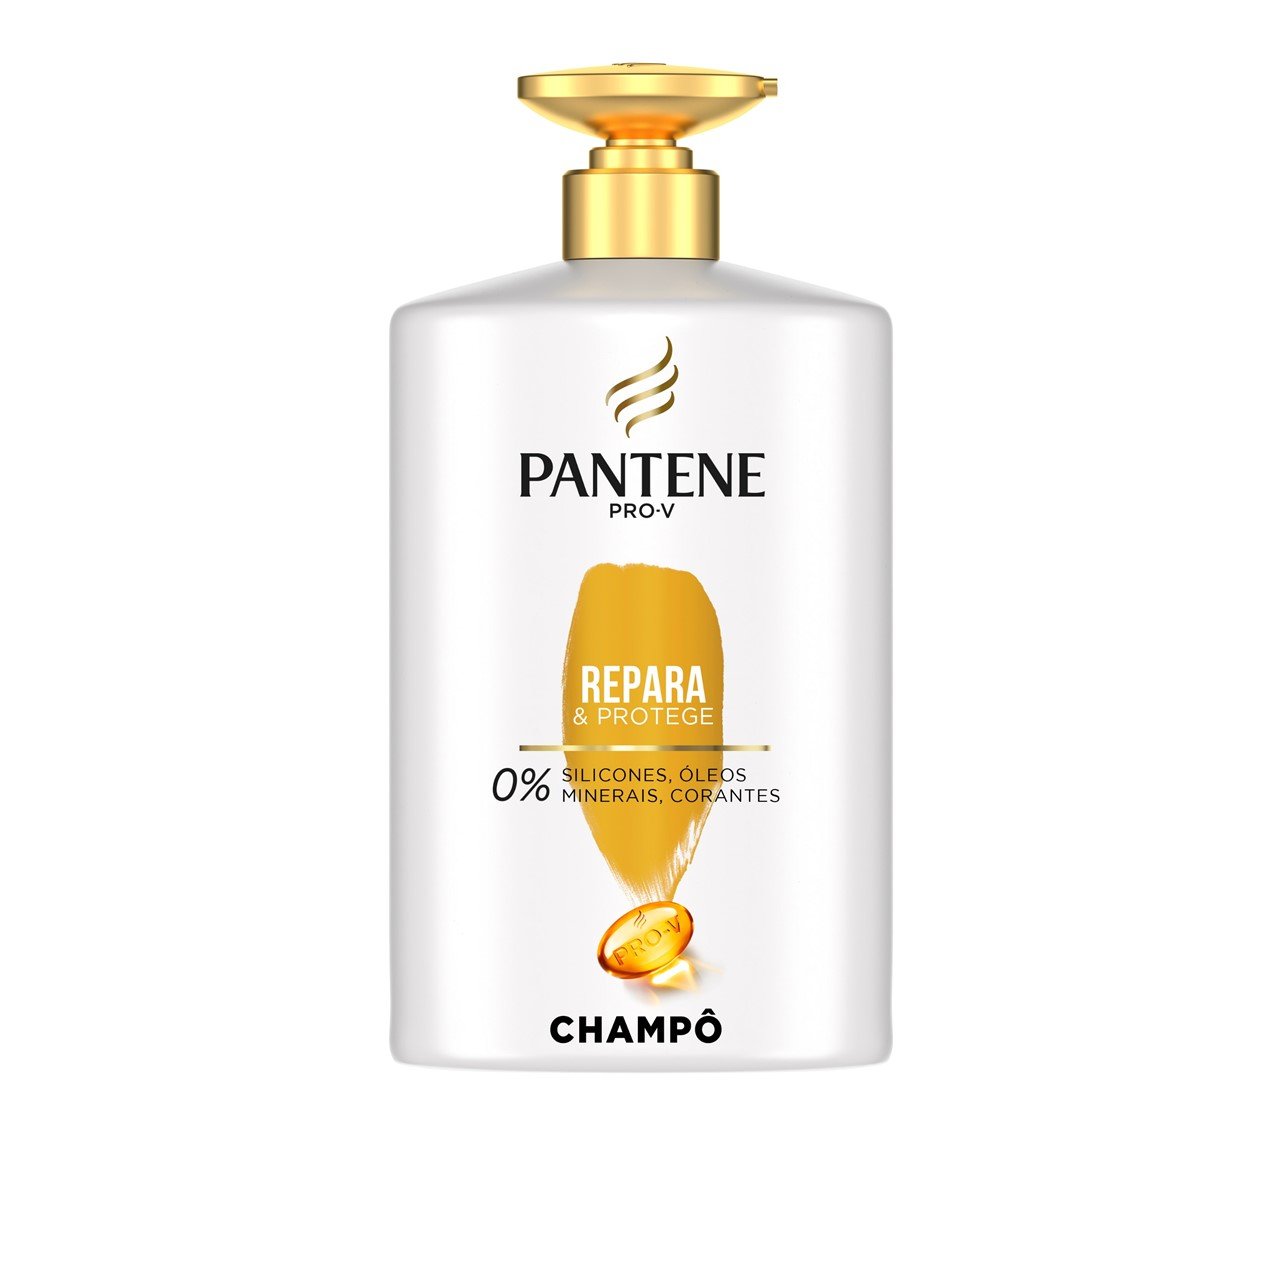 Pantene Pro-V Repair & Protect Shampoo 1L (33.81fl oz)